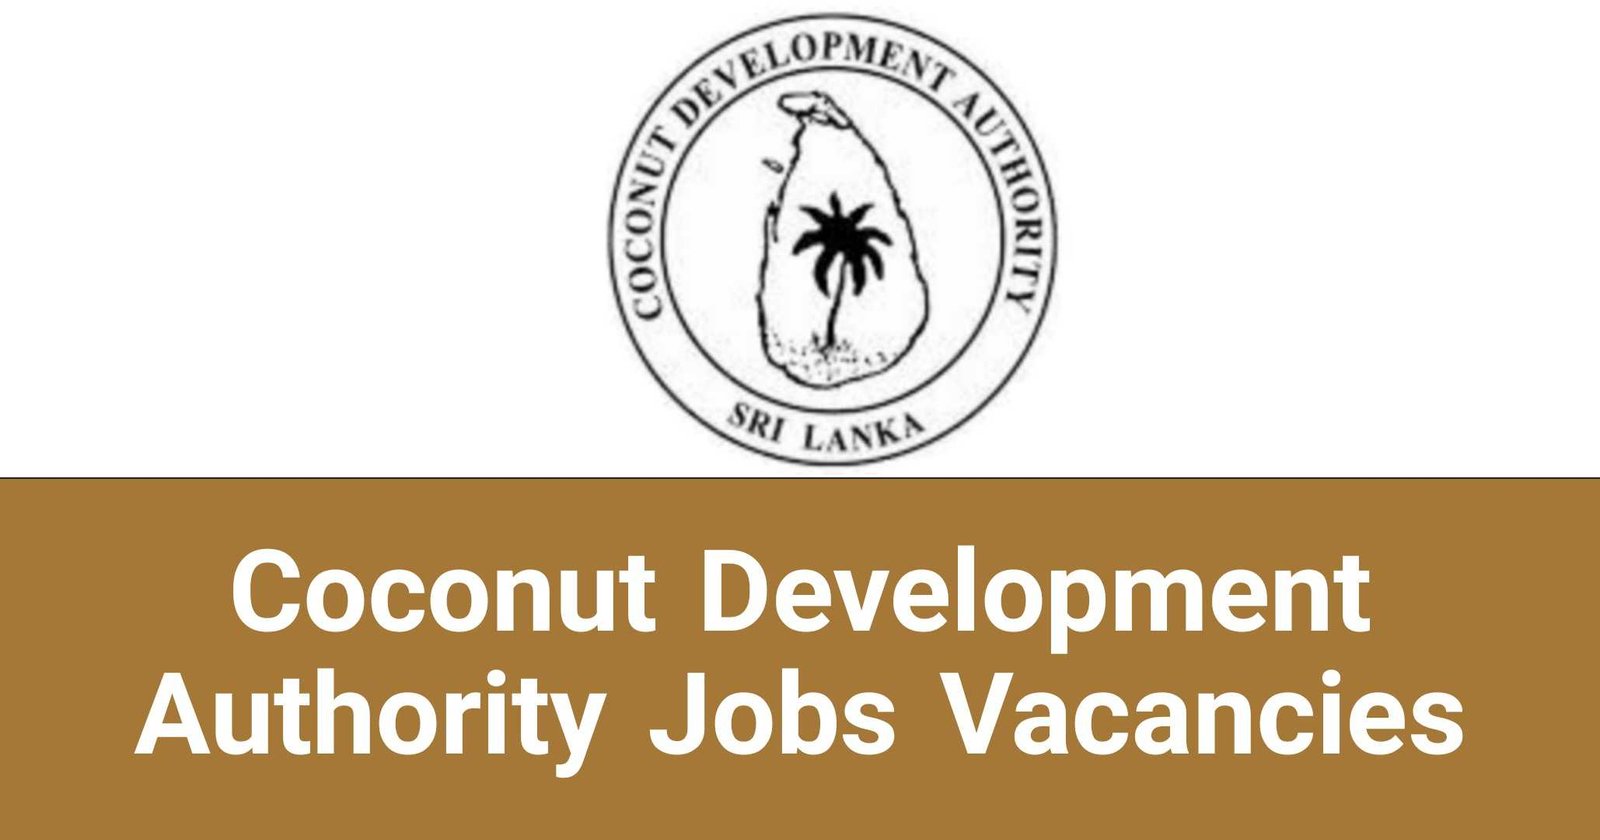 Coconut Development Authority Jobs Vacancies Careers